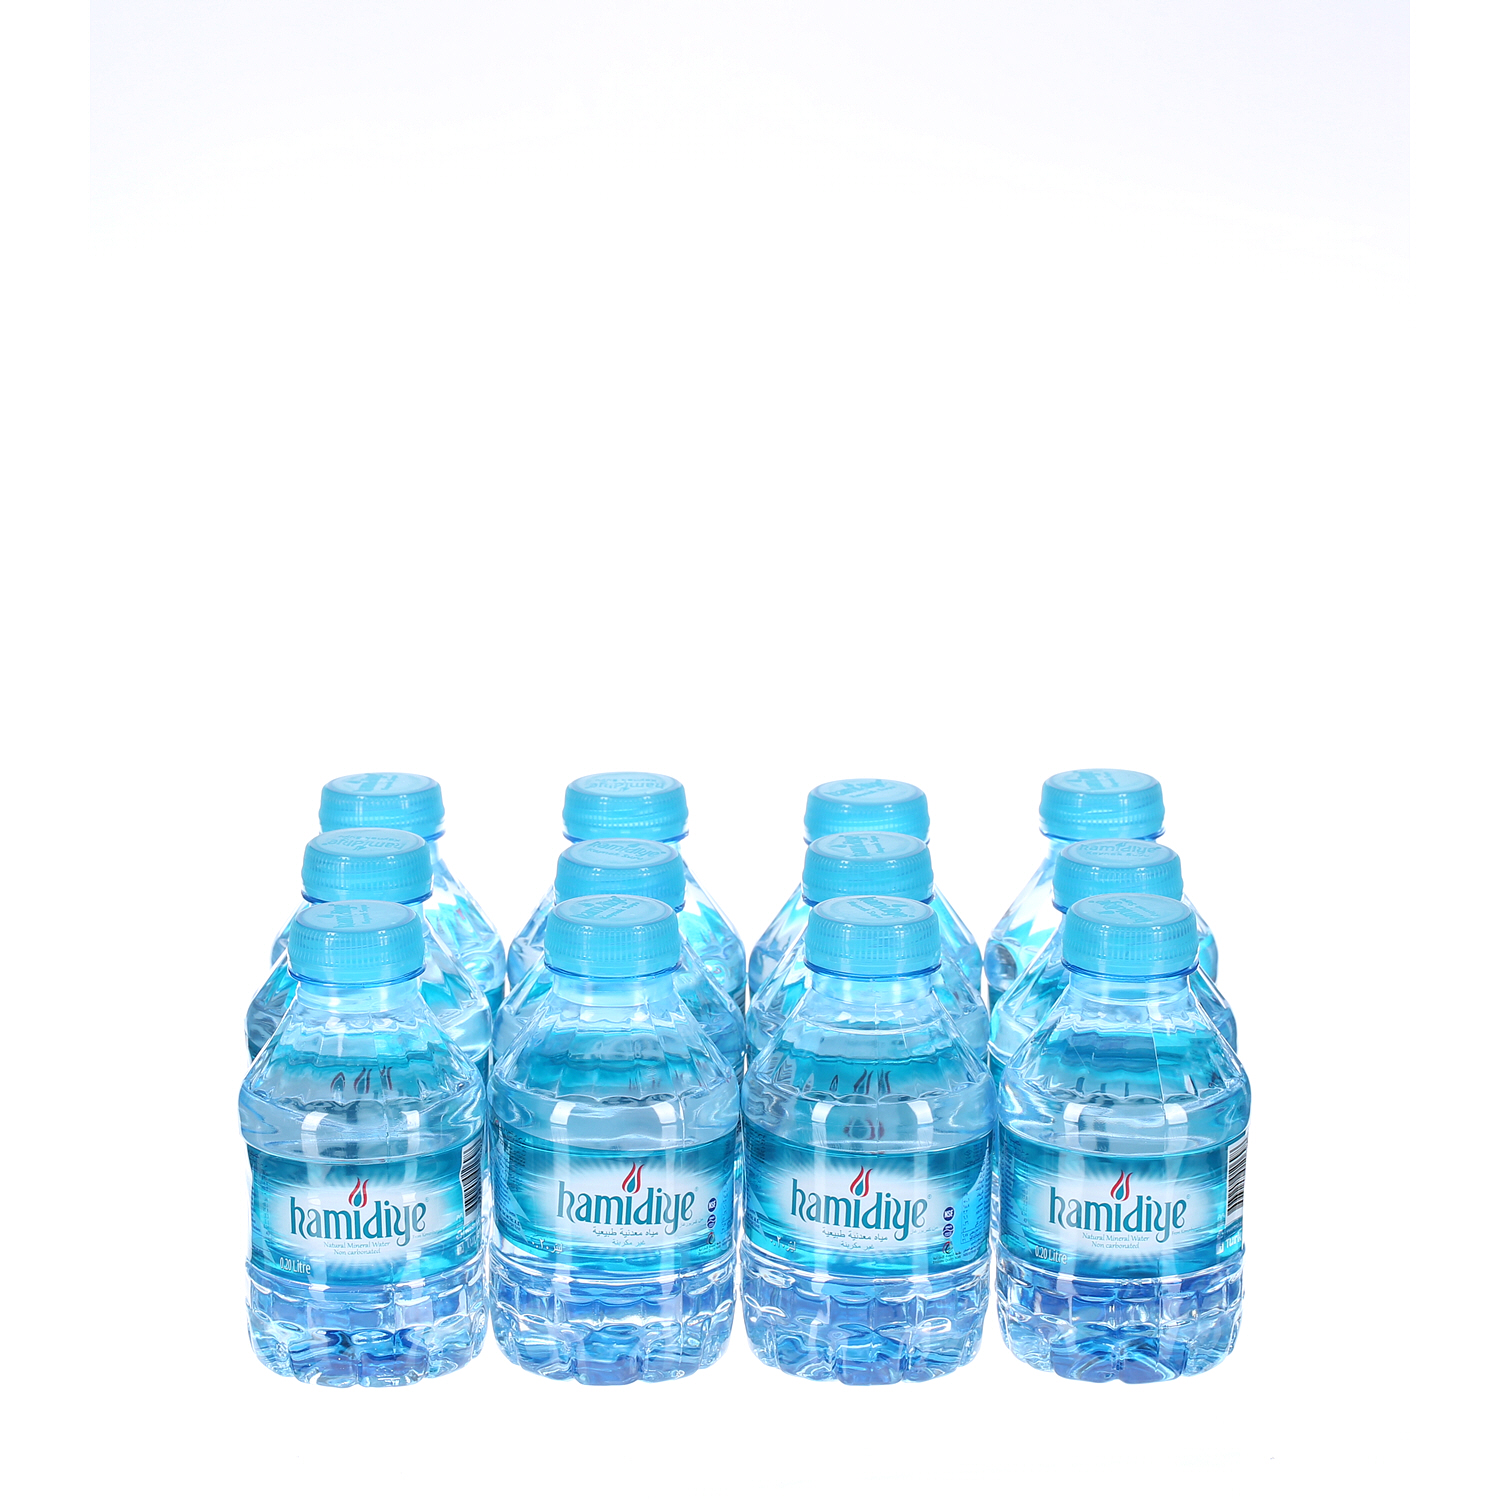 Hamidiya Natural Spring Water 200 ml × 12 Pack